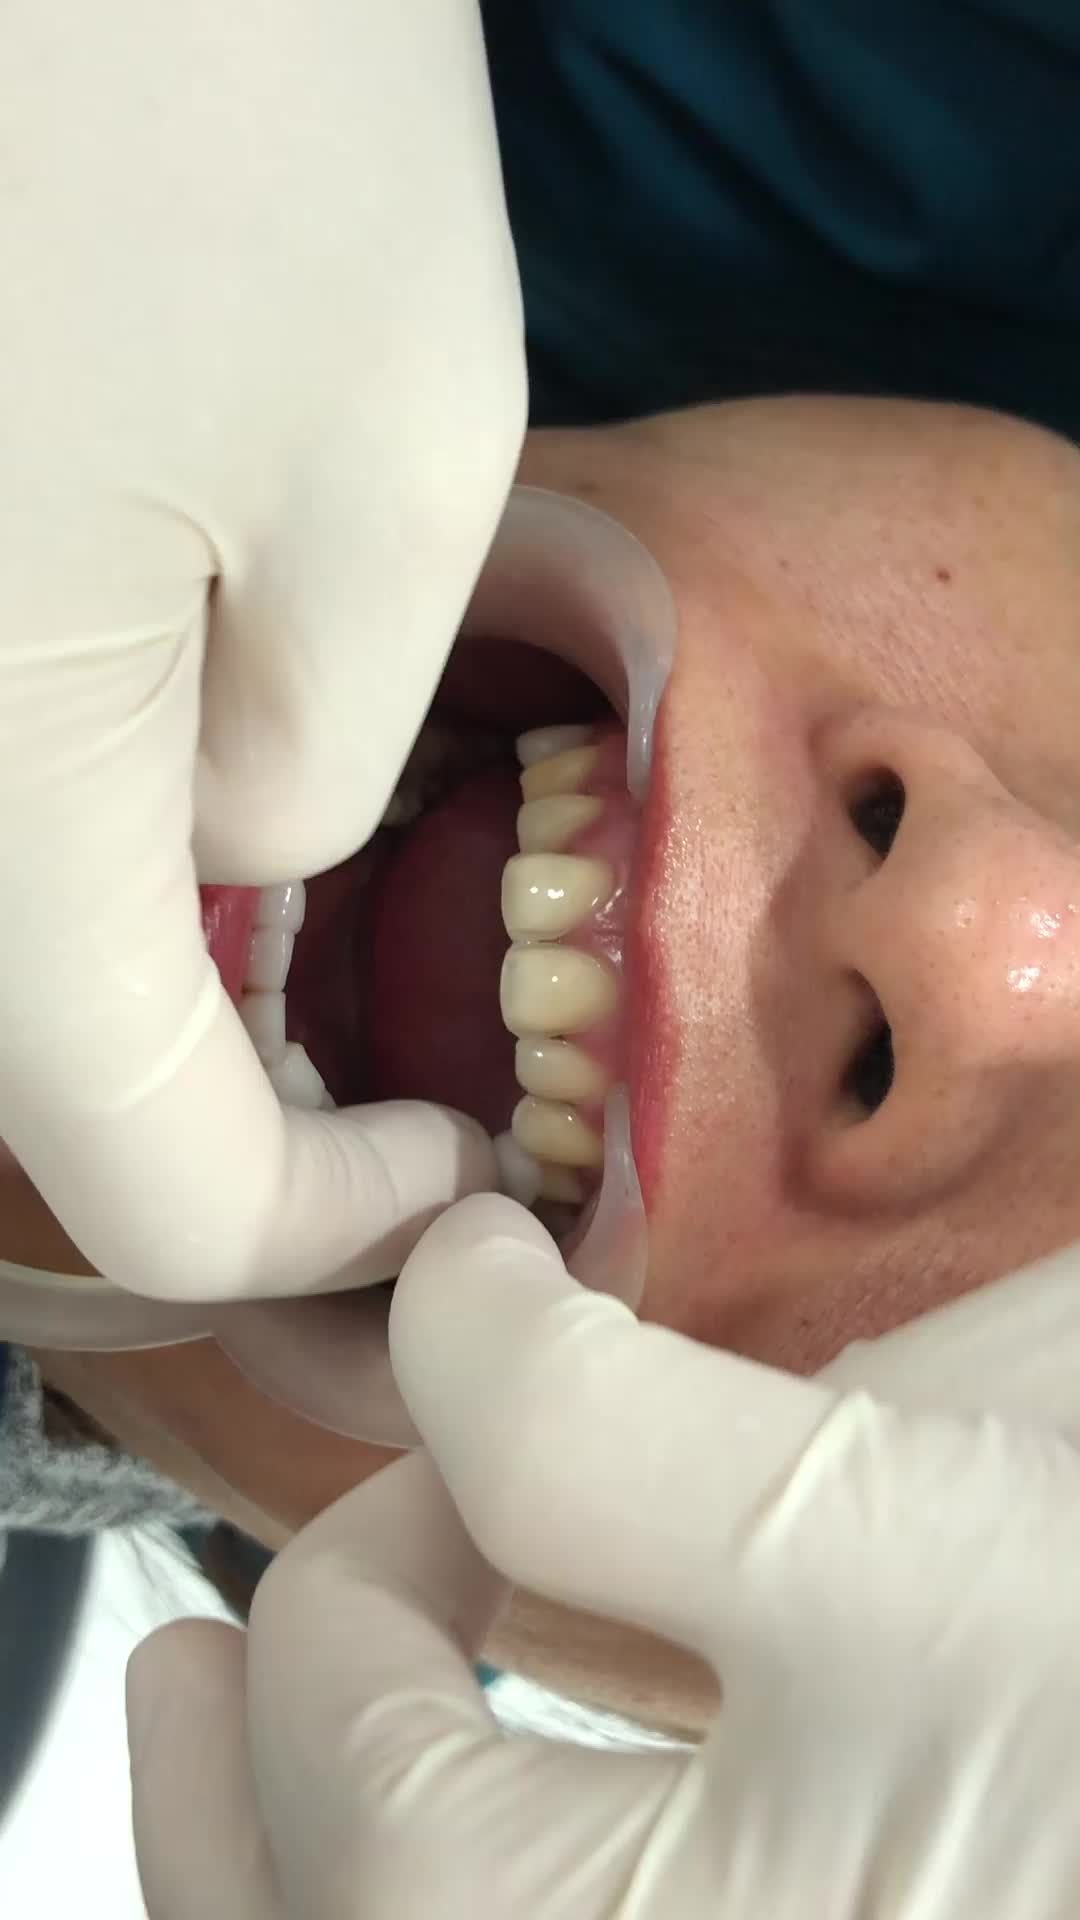 [CẬN CẢNH] Ca lắp răng sứ thẩm mỹ tại Jun Dental cho chị khách vô cùng